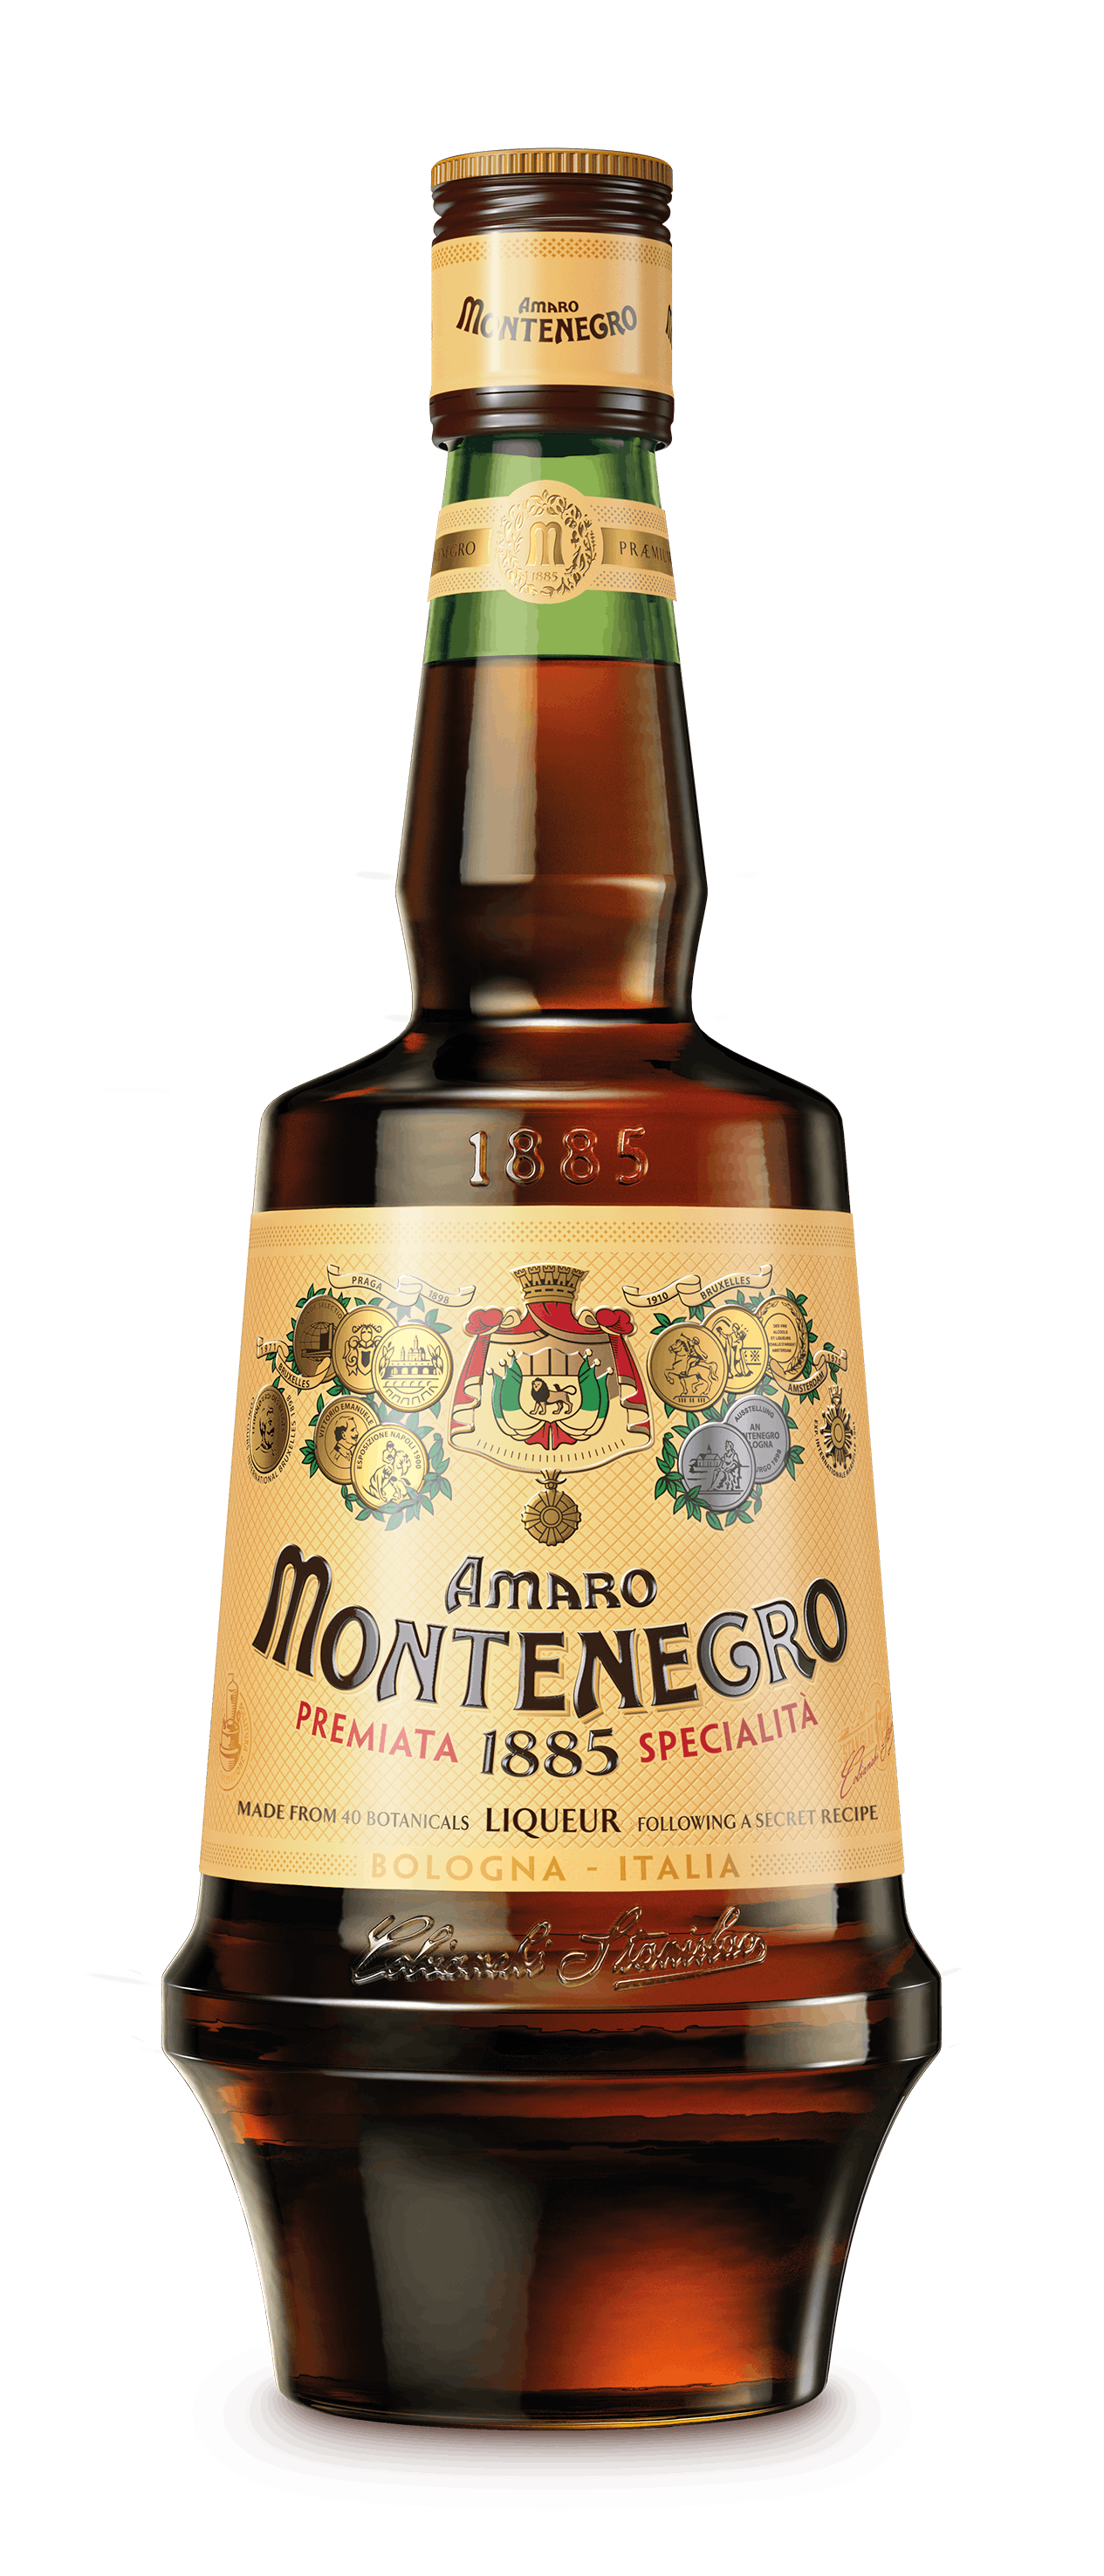 Montenegro Amaro Italiano Liqueur